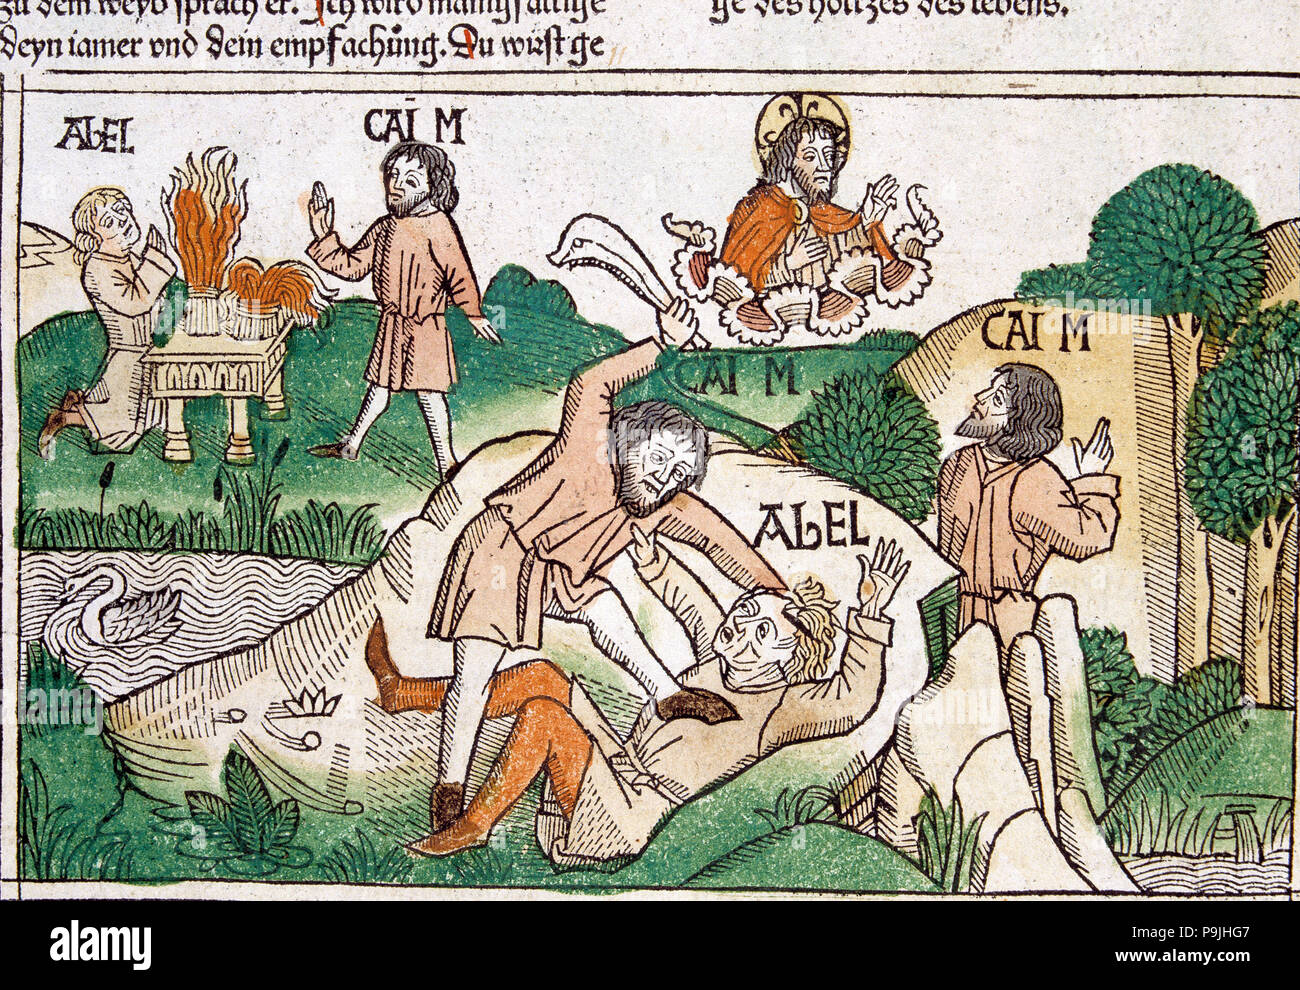 Caïn et Abel, scène dans la Bible de Nuremberg écrit en allemand, 1483. Banque D'Images